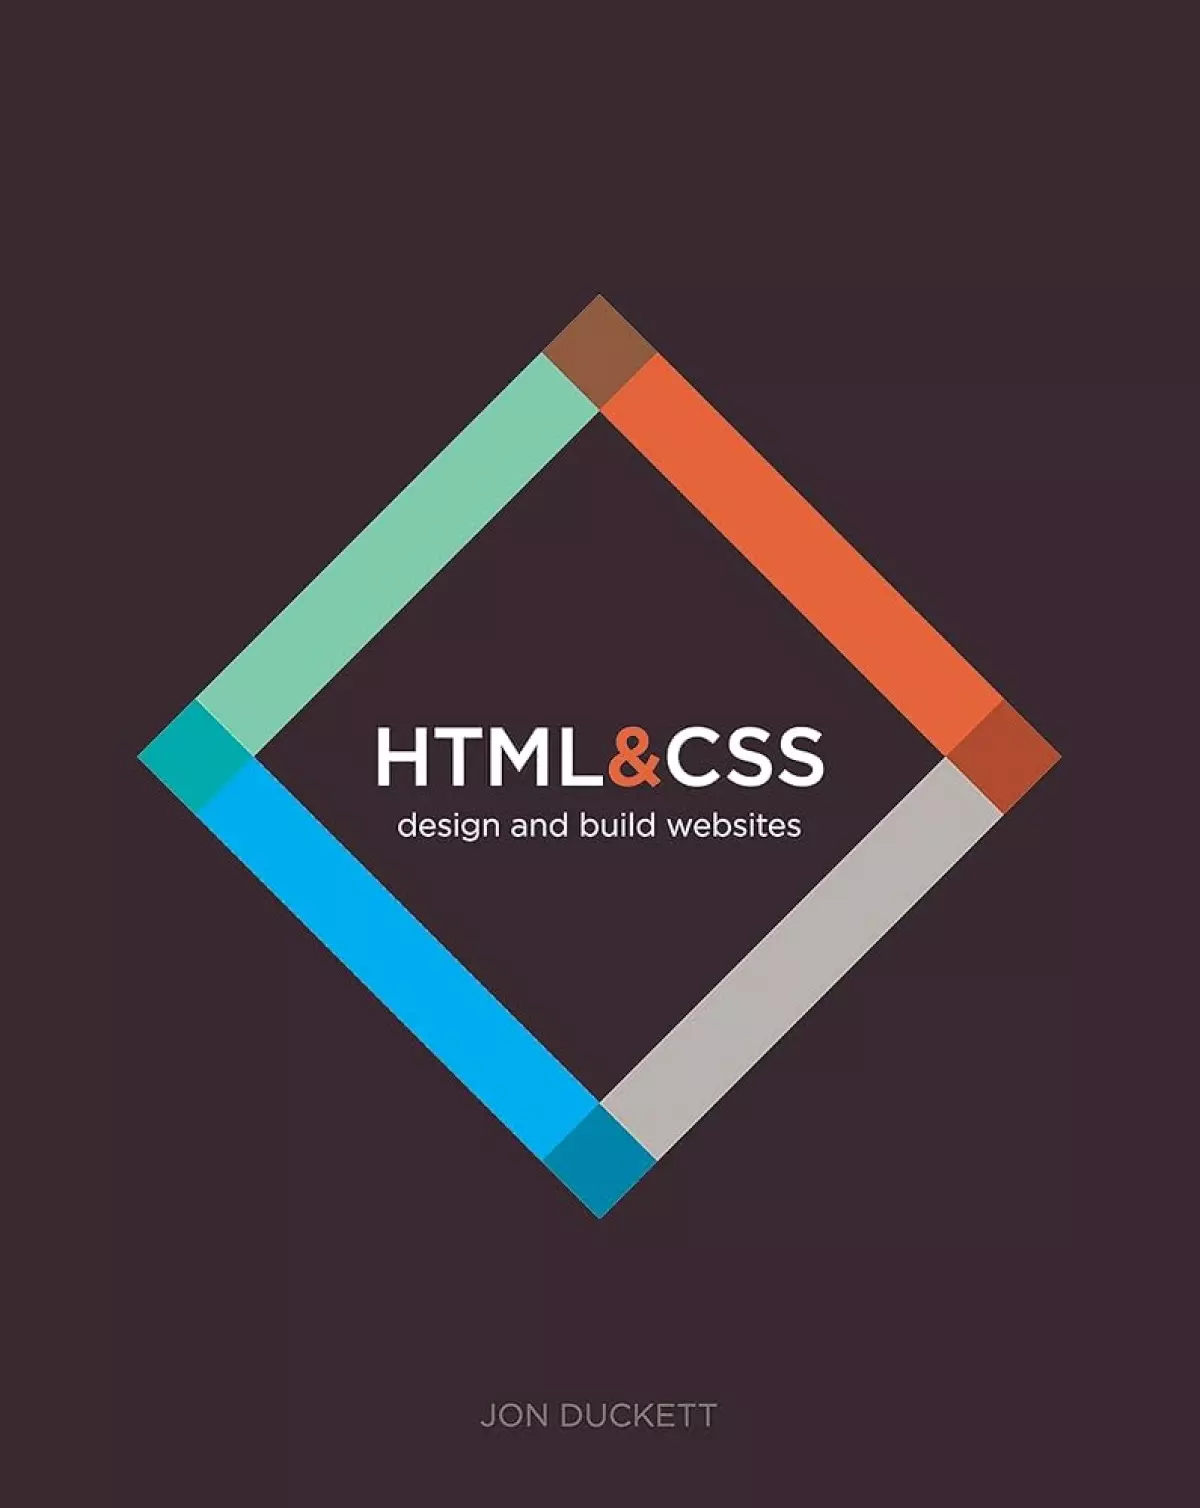 HTML & CSS là hai ngôn ngữ bắt buộc phải biết khi lập trình web.